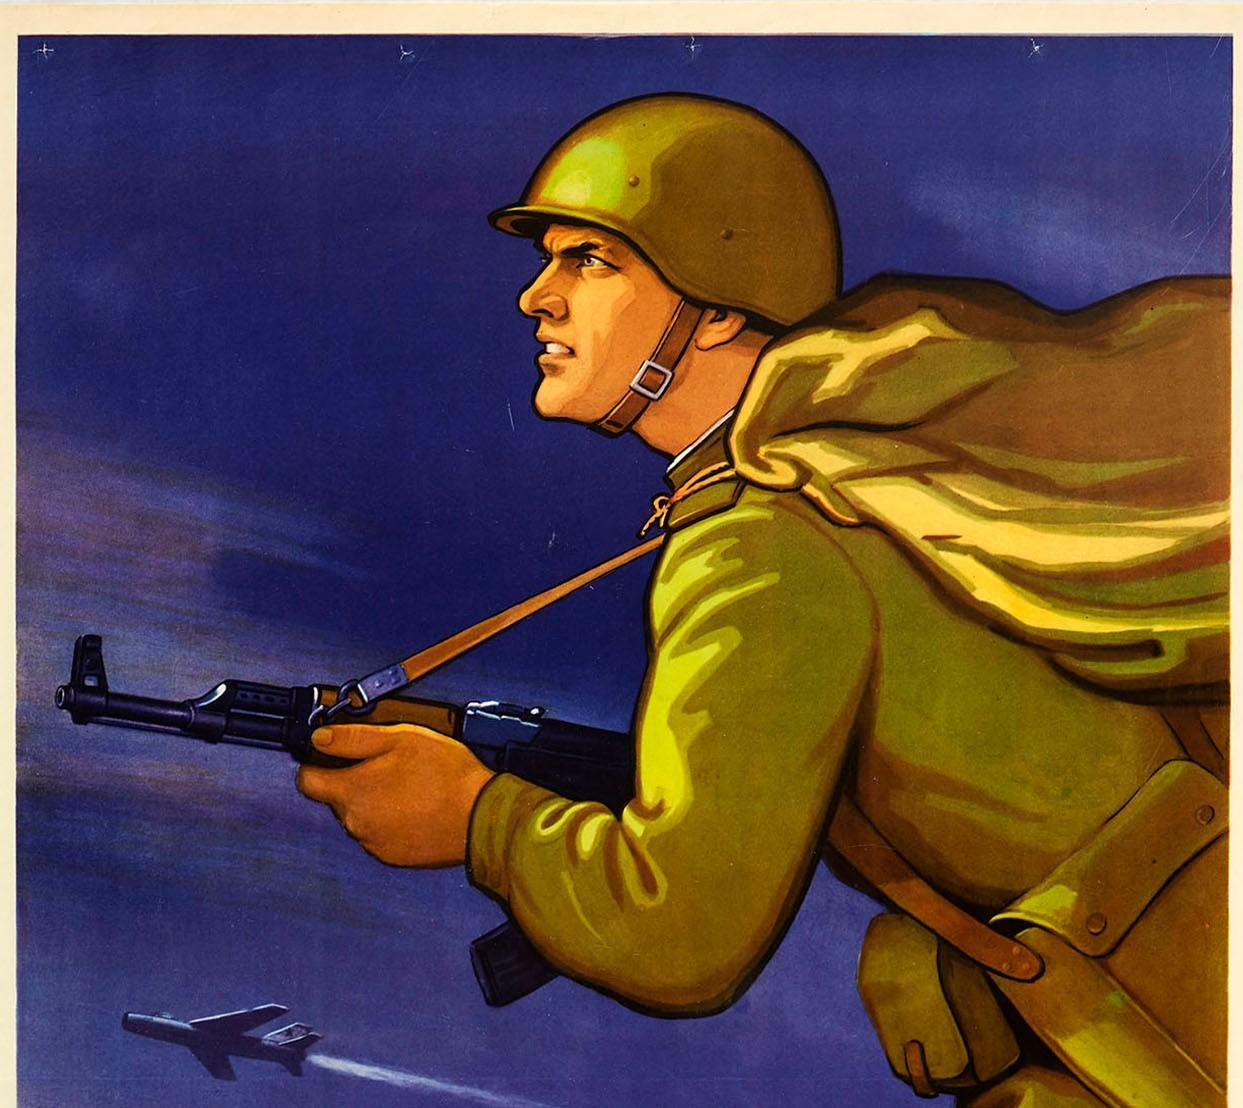 Affiche de propagande soviétique vintage de l'époque de la guerre froide - Apprenez à avancer rapidement et courageusement ! Illustration dynamique montrant un soldat d'infanterie en uniforme tenant son fusil automatique Kalachnikov et s'élançant